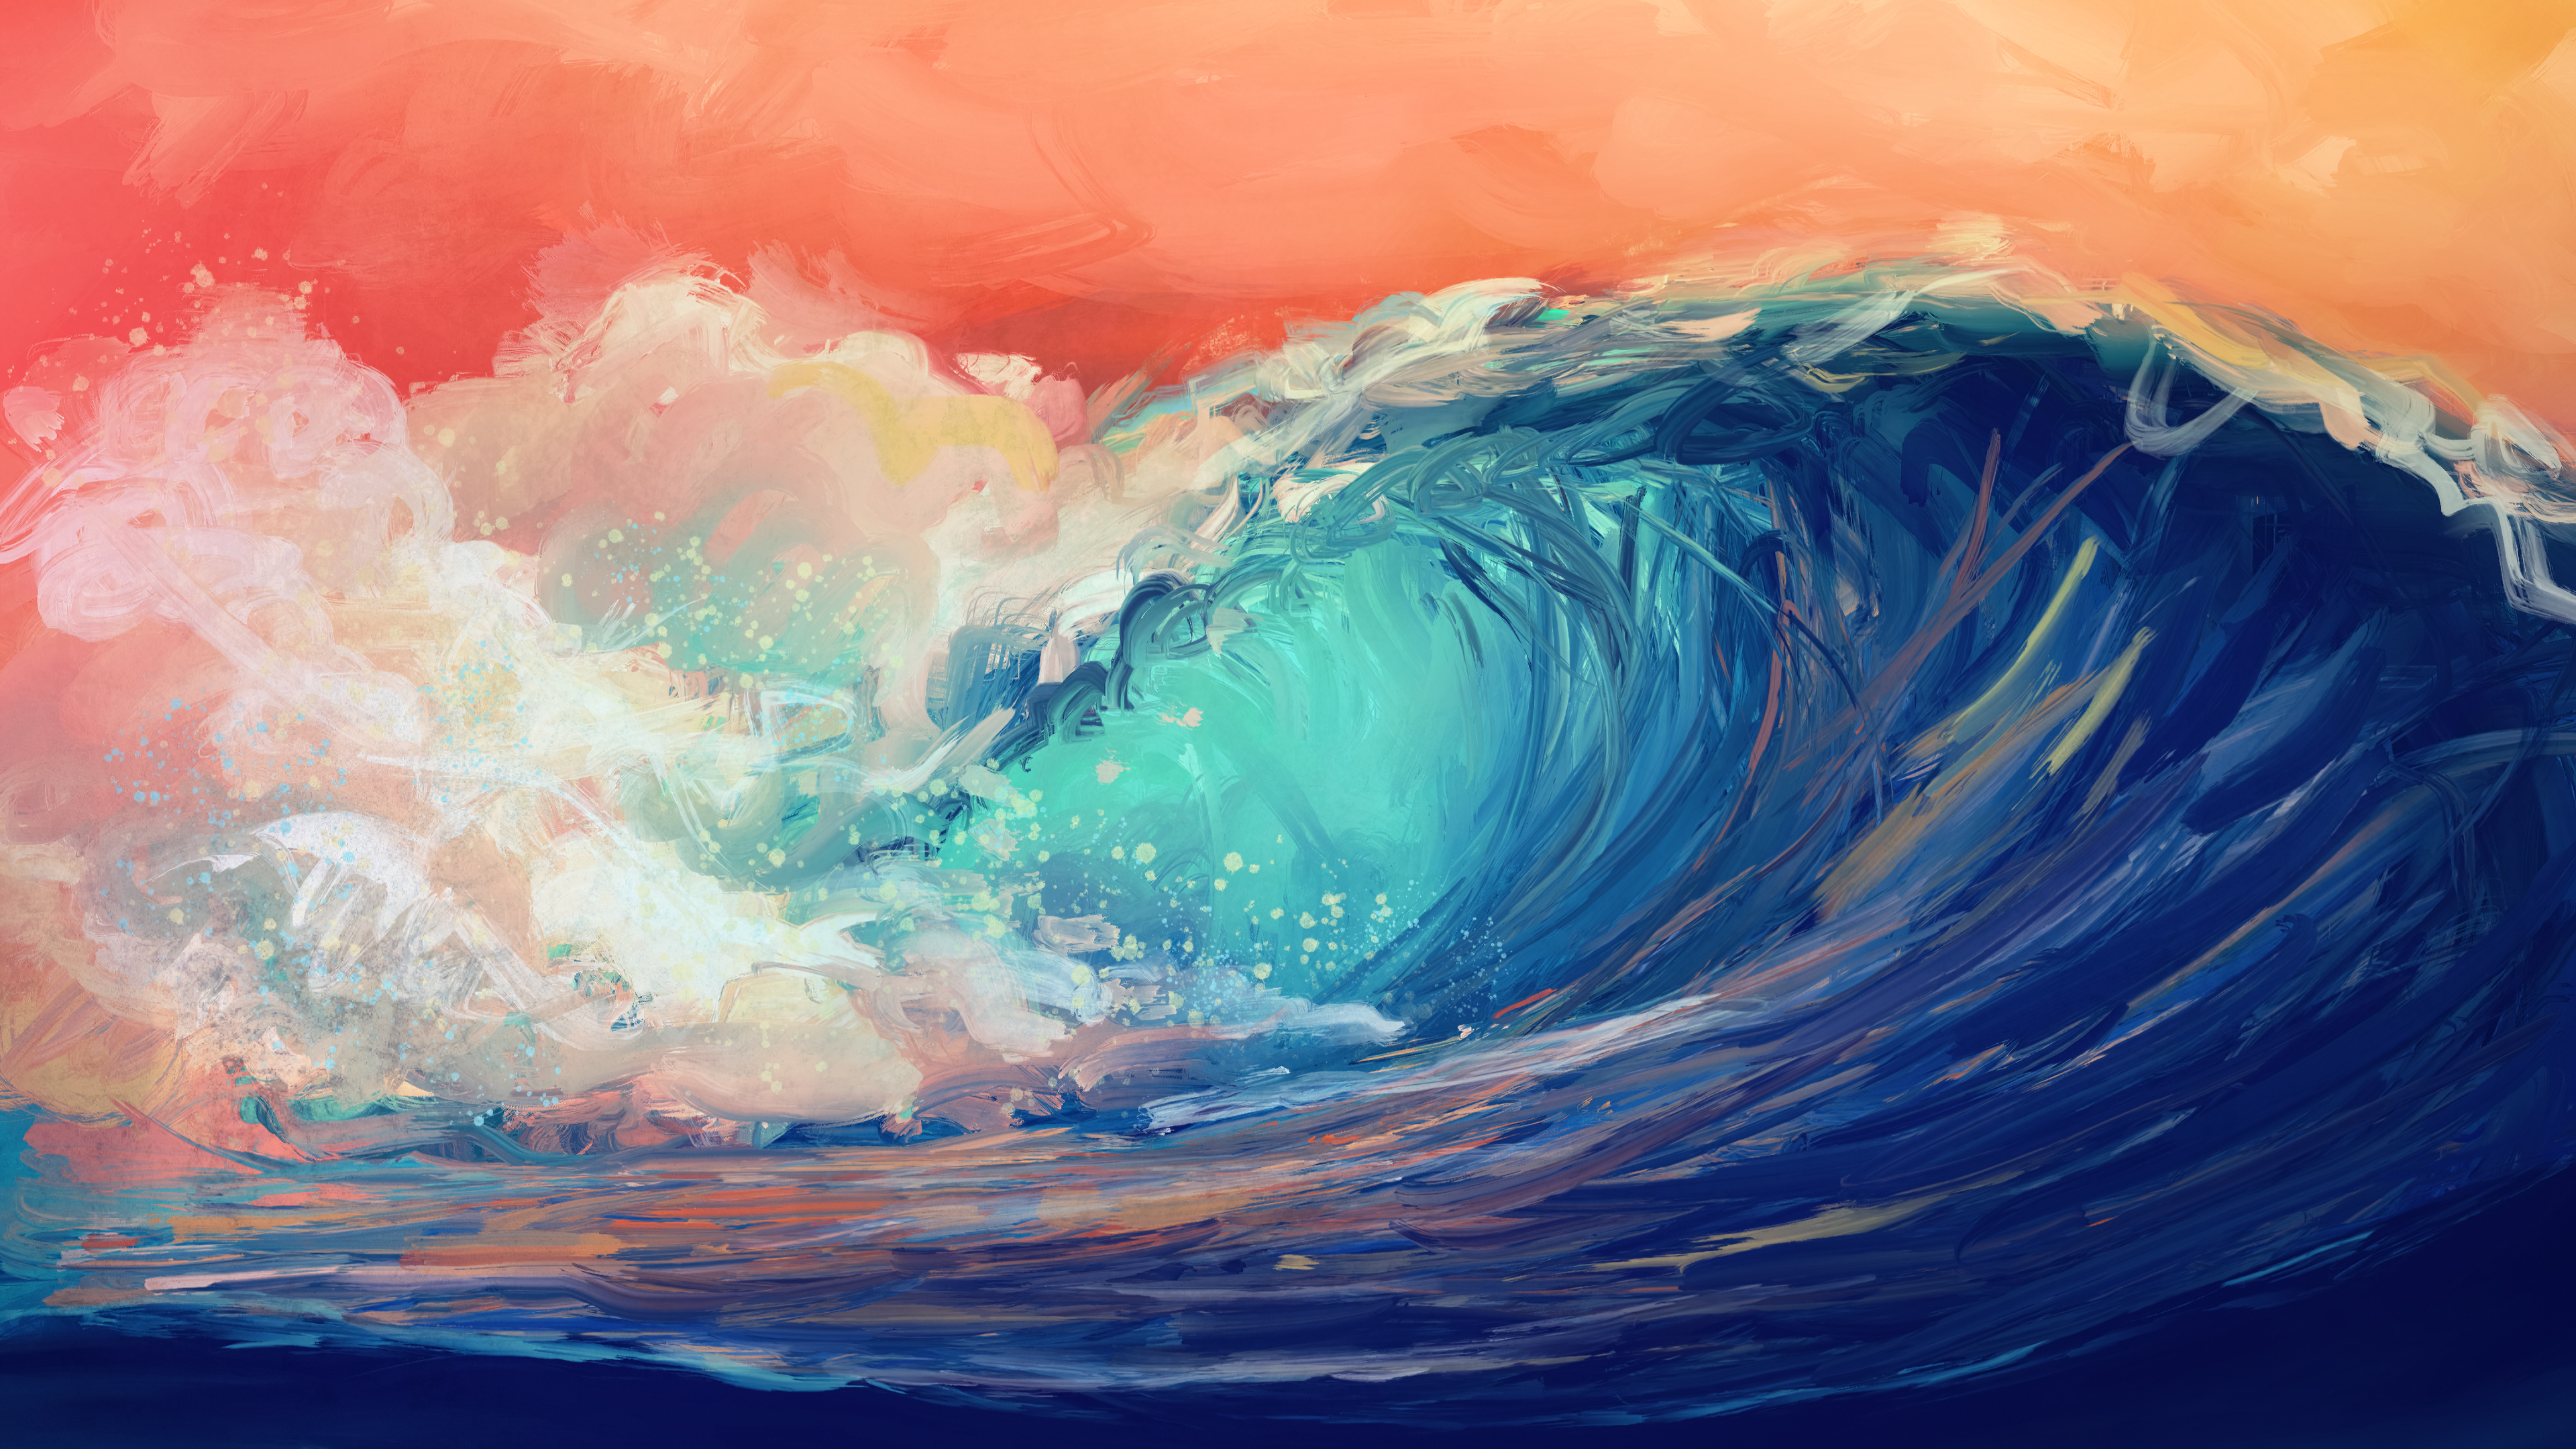 General 3840x2160 waves sea artwork painting